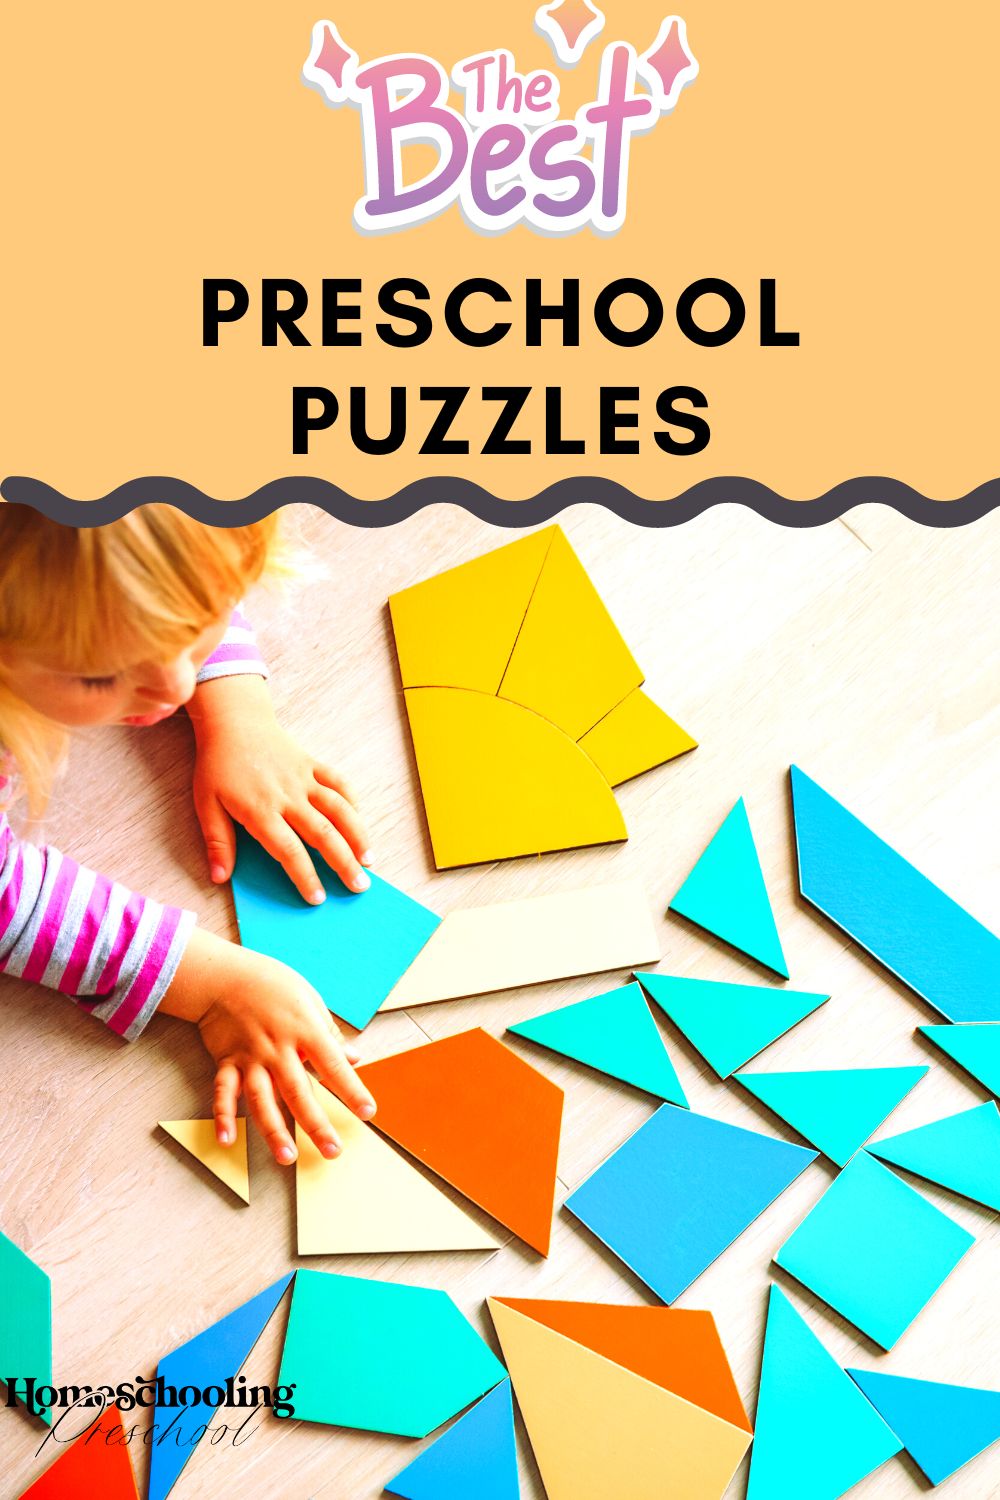 The Best Preschool Puzzles